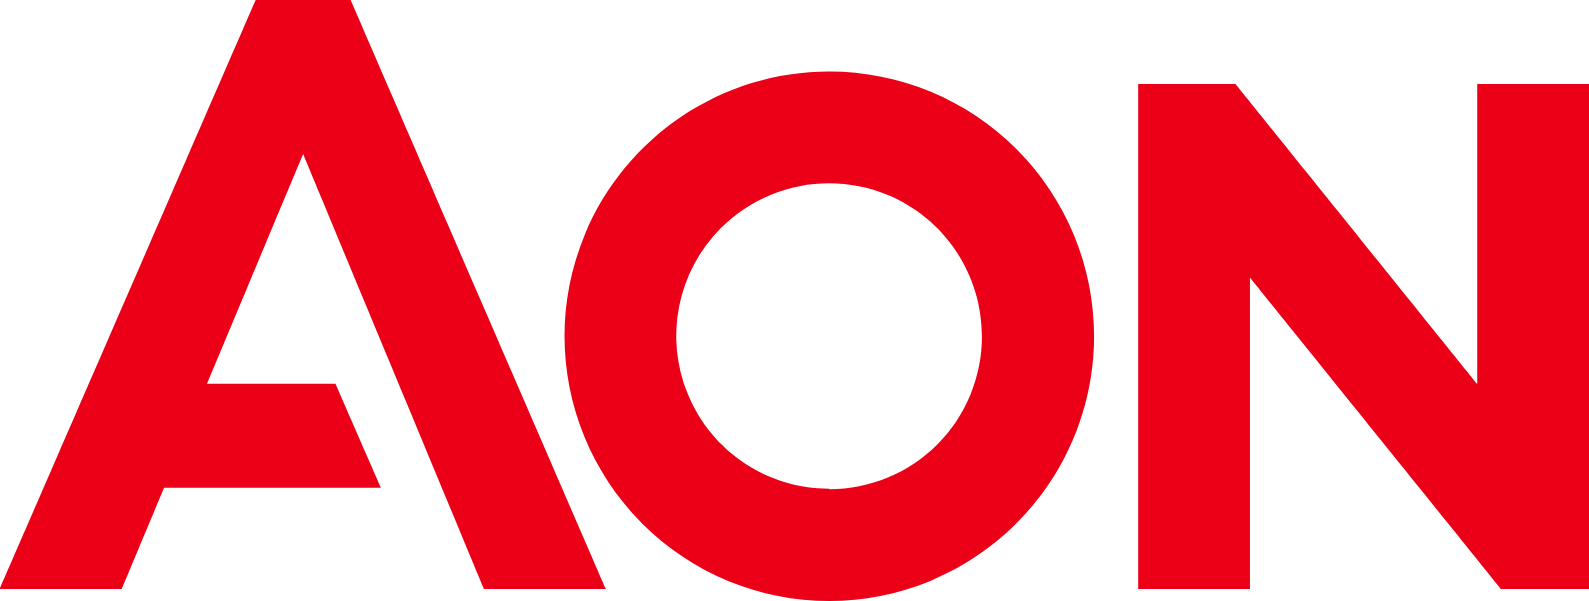 Aon logo (transparent PNG)